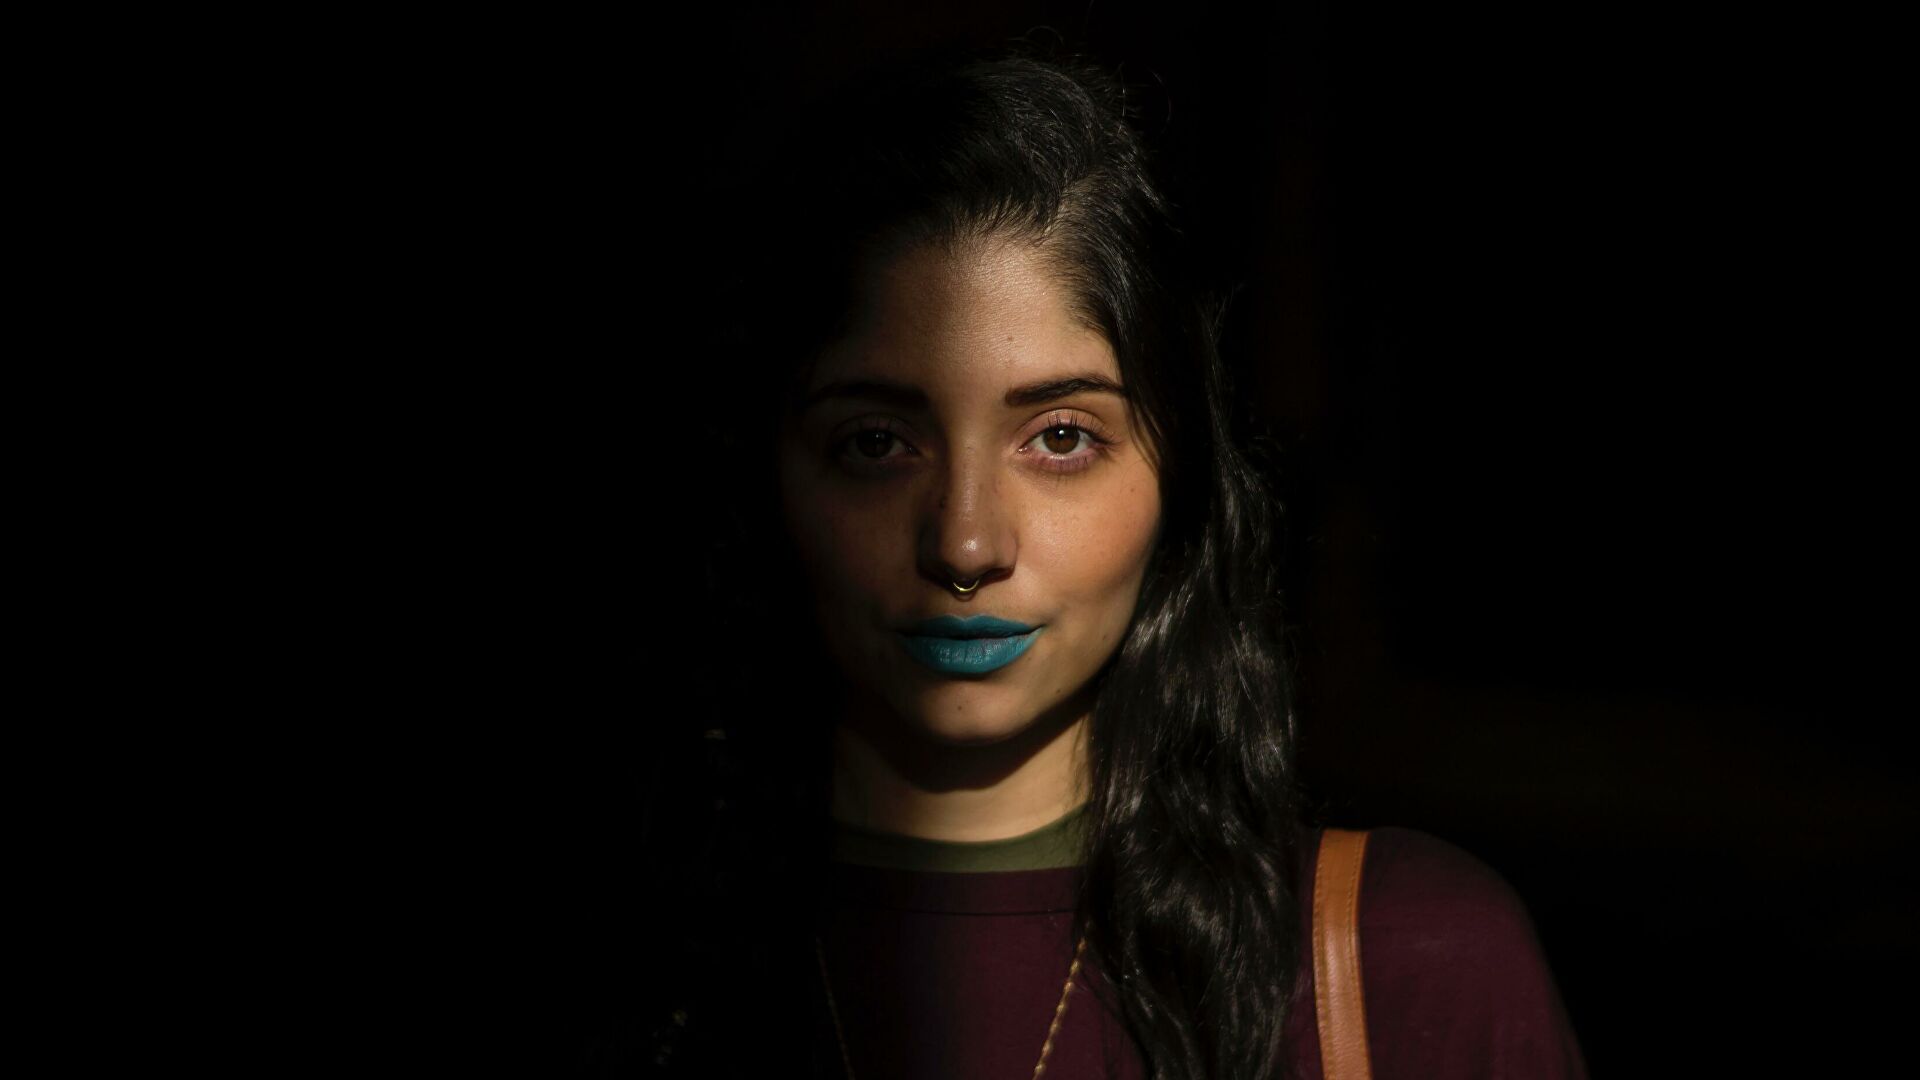  Descubren herencia denisoviana en los rasgos faciales de los latinoamericanos